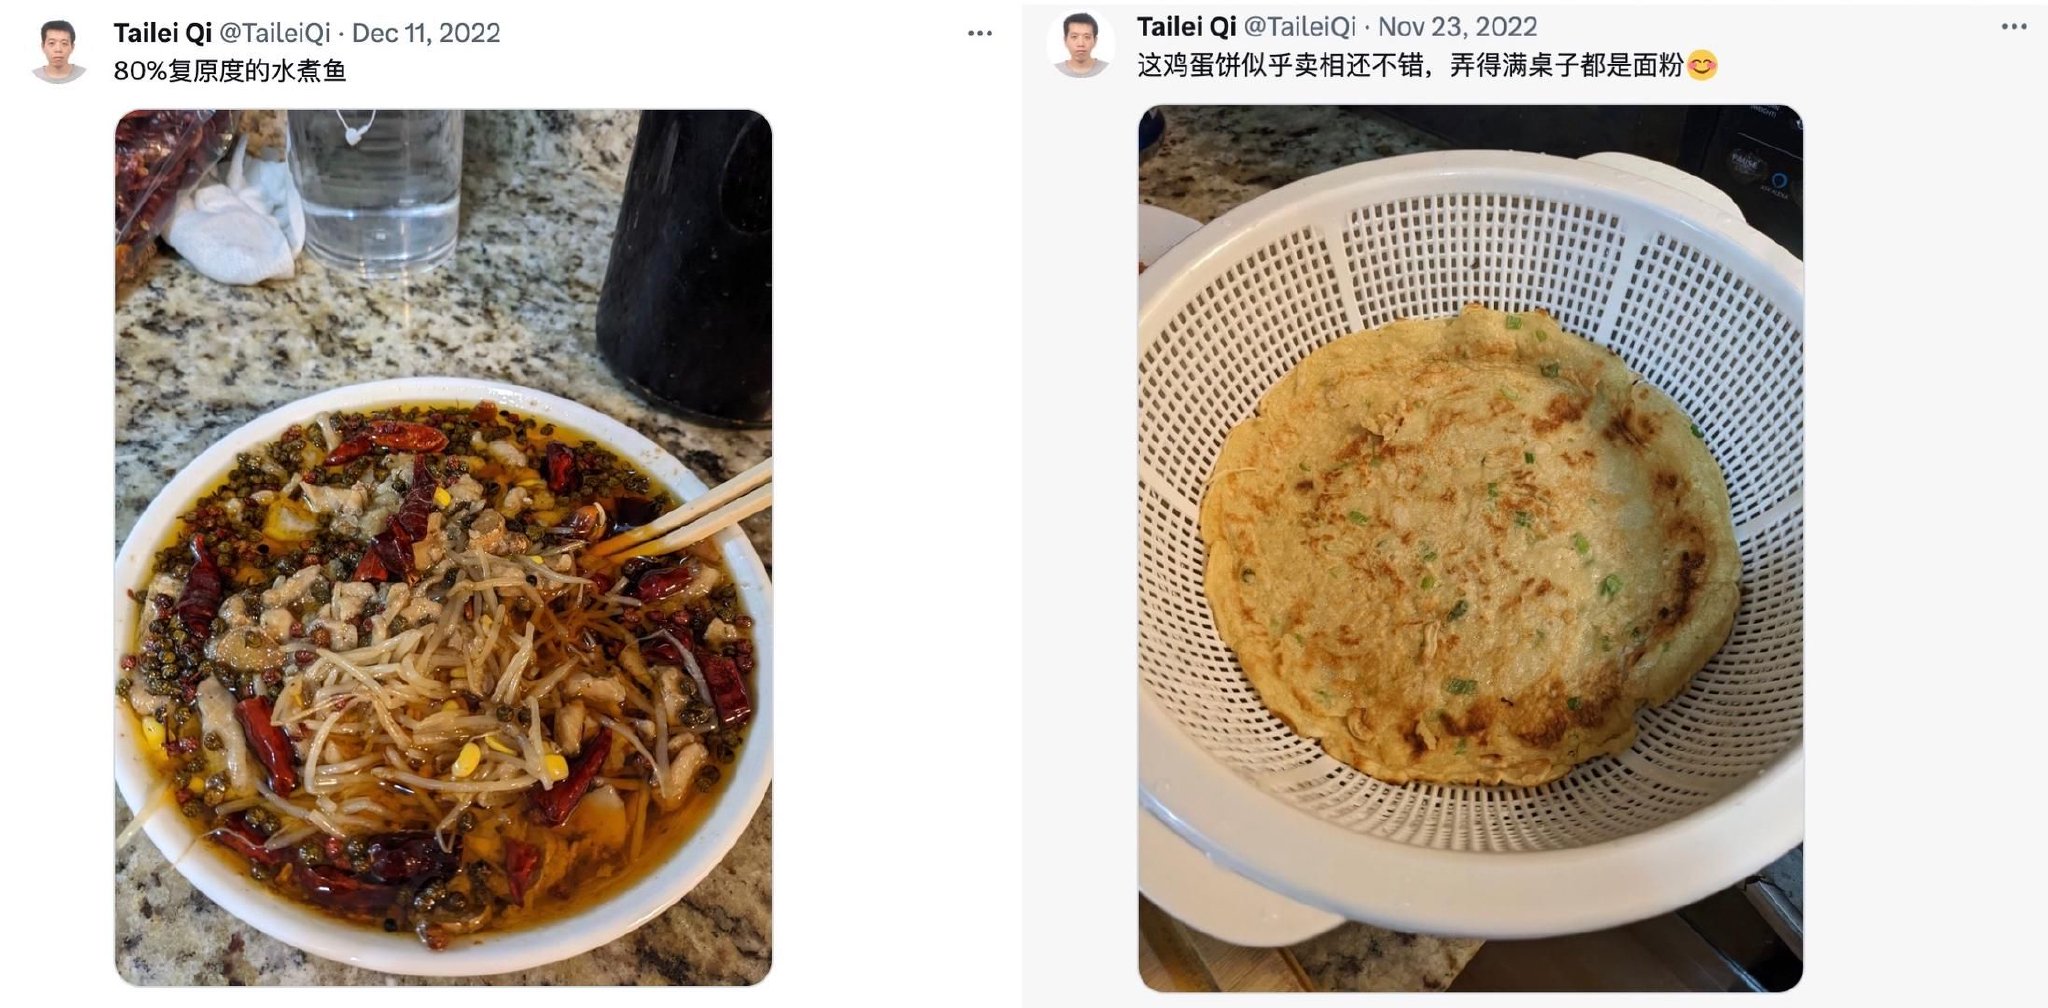 ▲齐太磊经常自己做菜并拍照分享